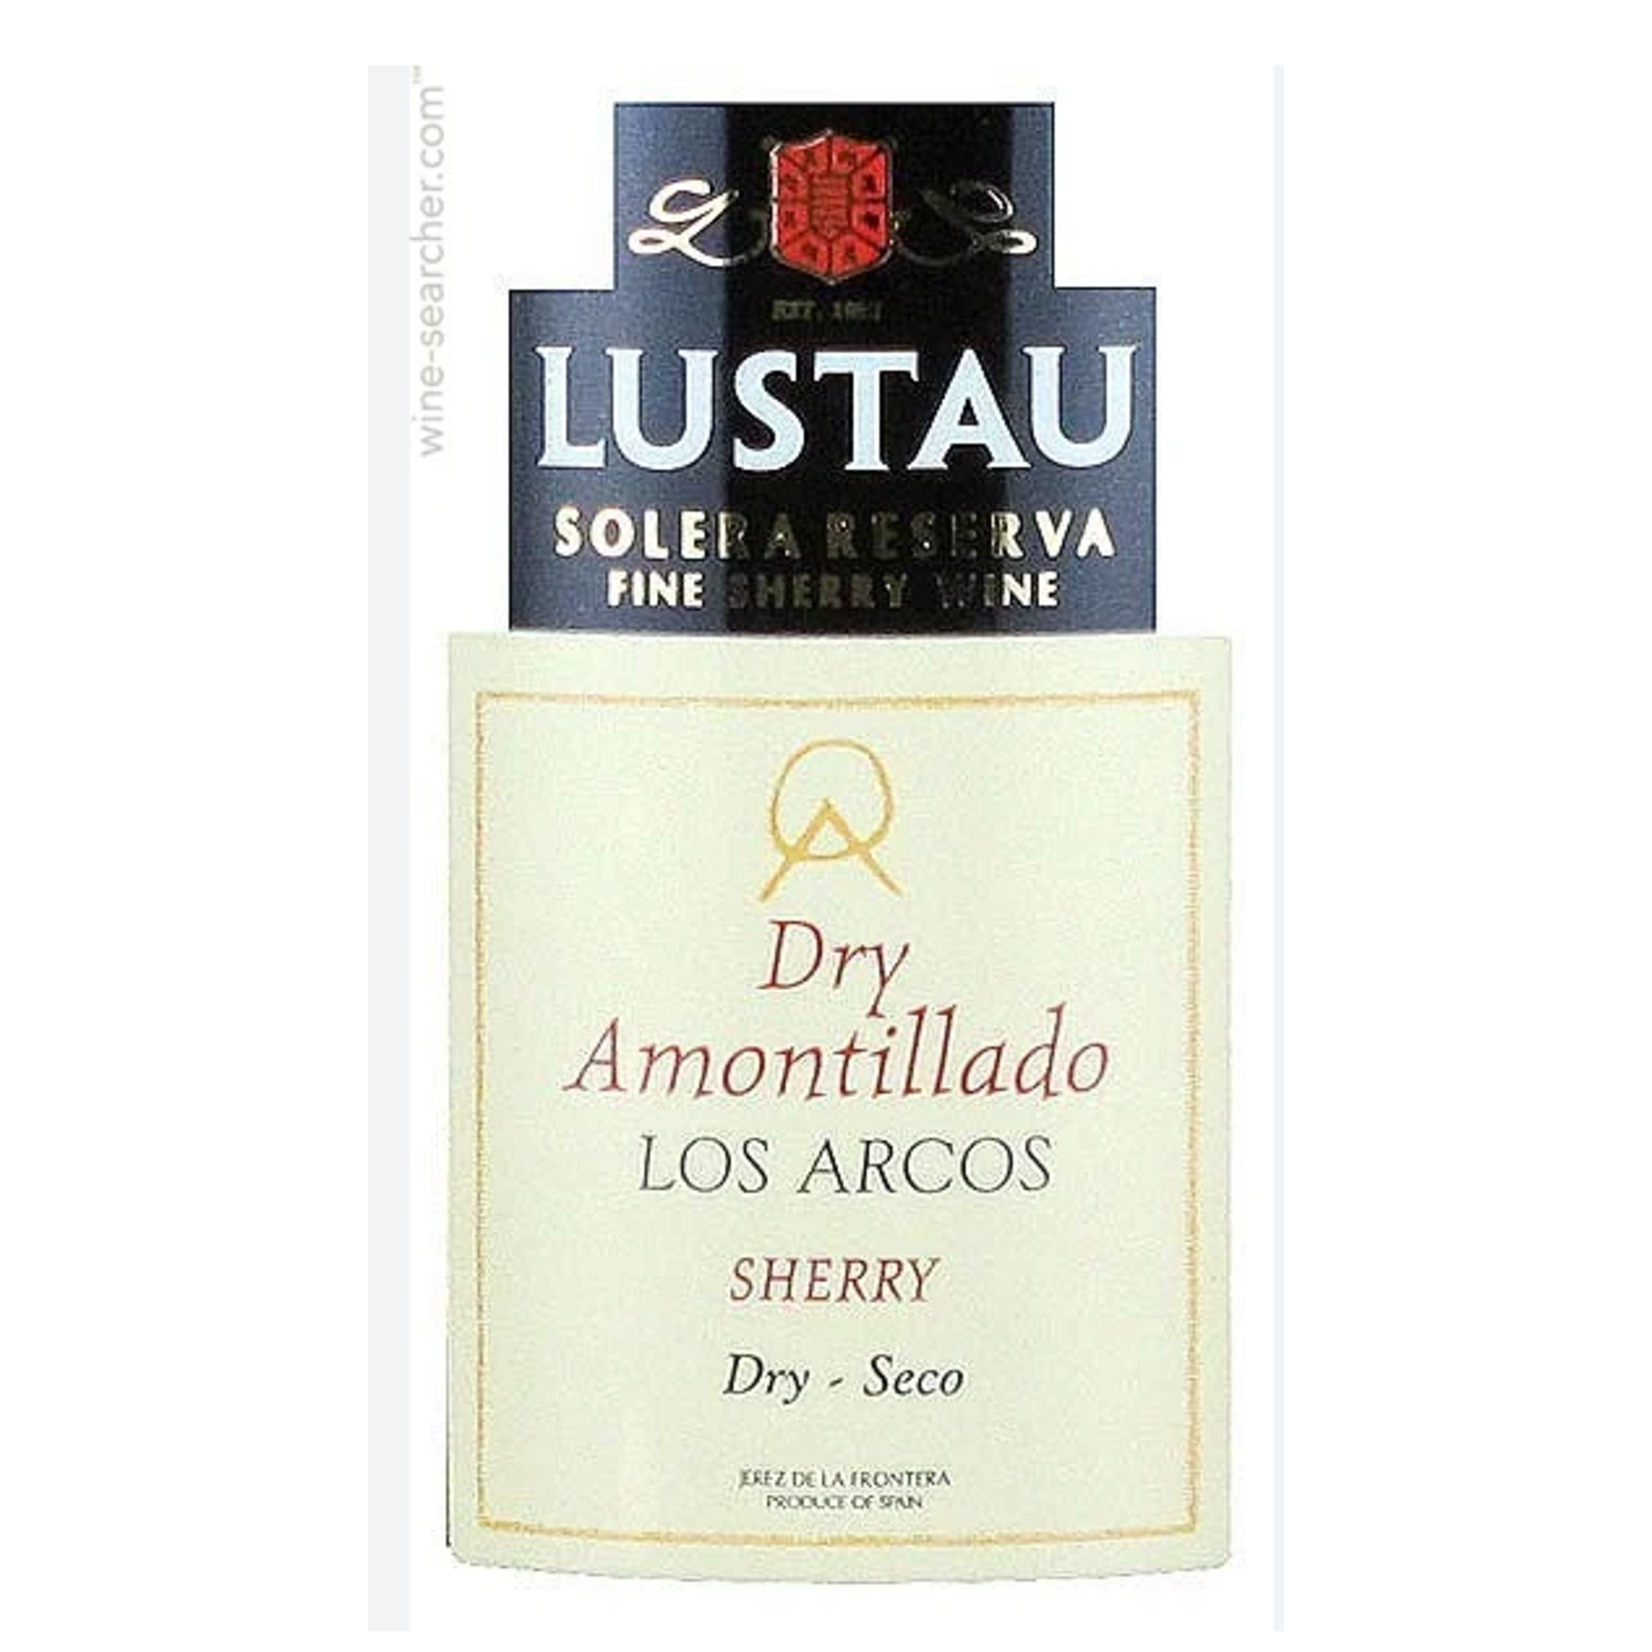 Lustau Solera Familiar Lustau Dry Amontillado Los Arcos Sherry Spain